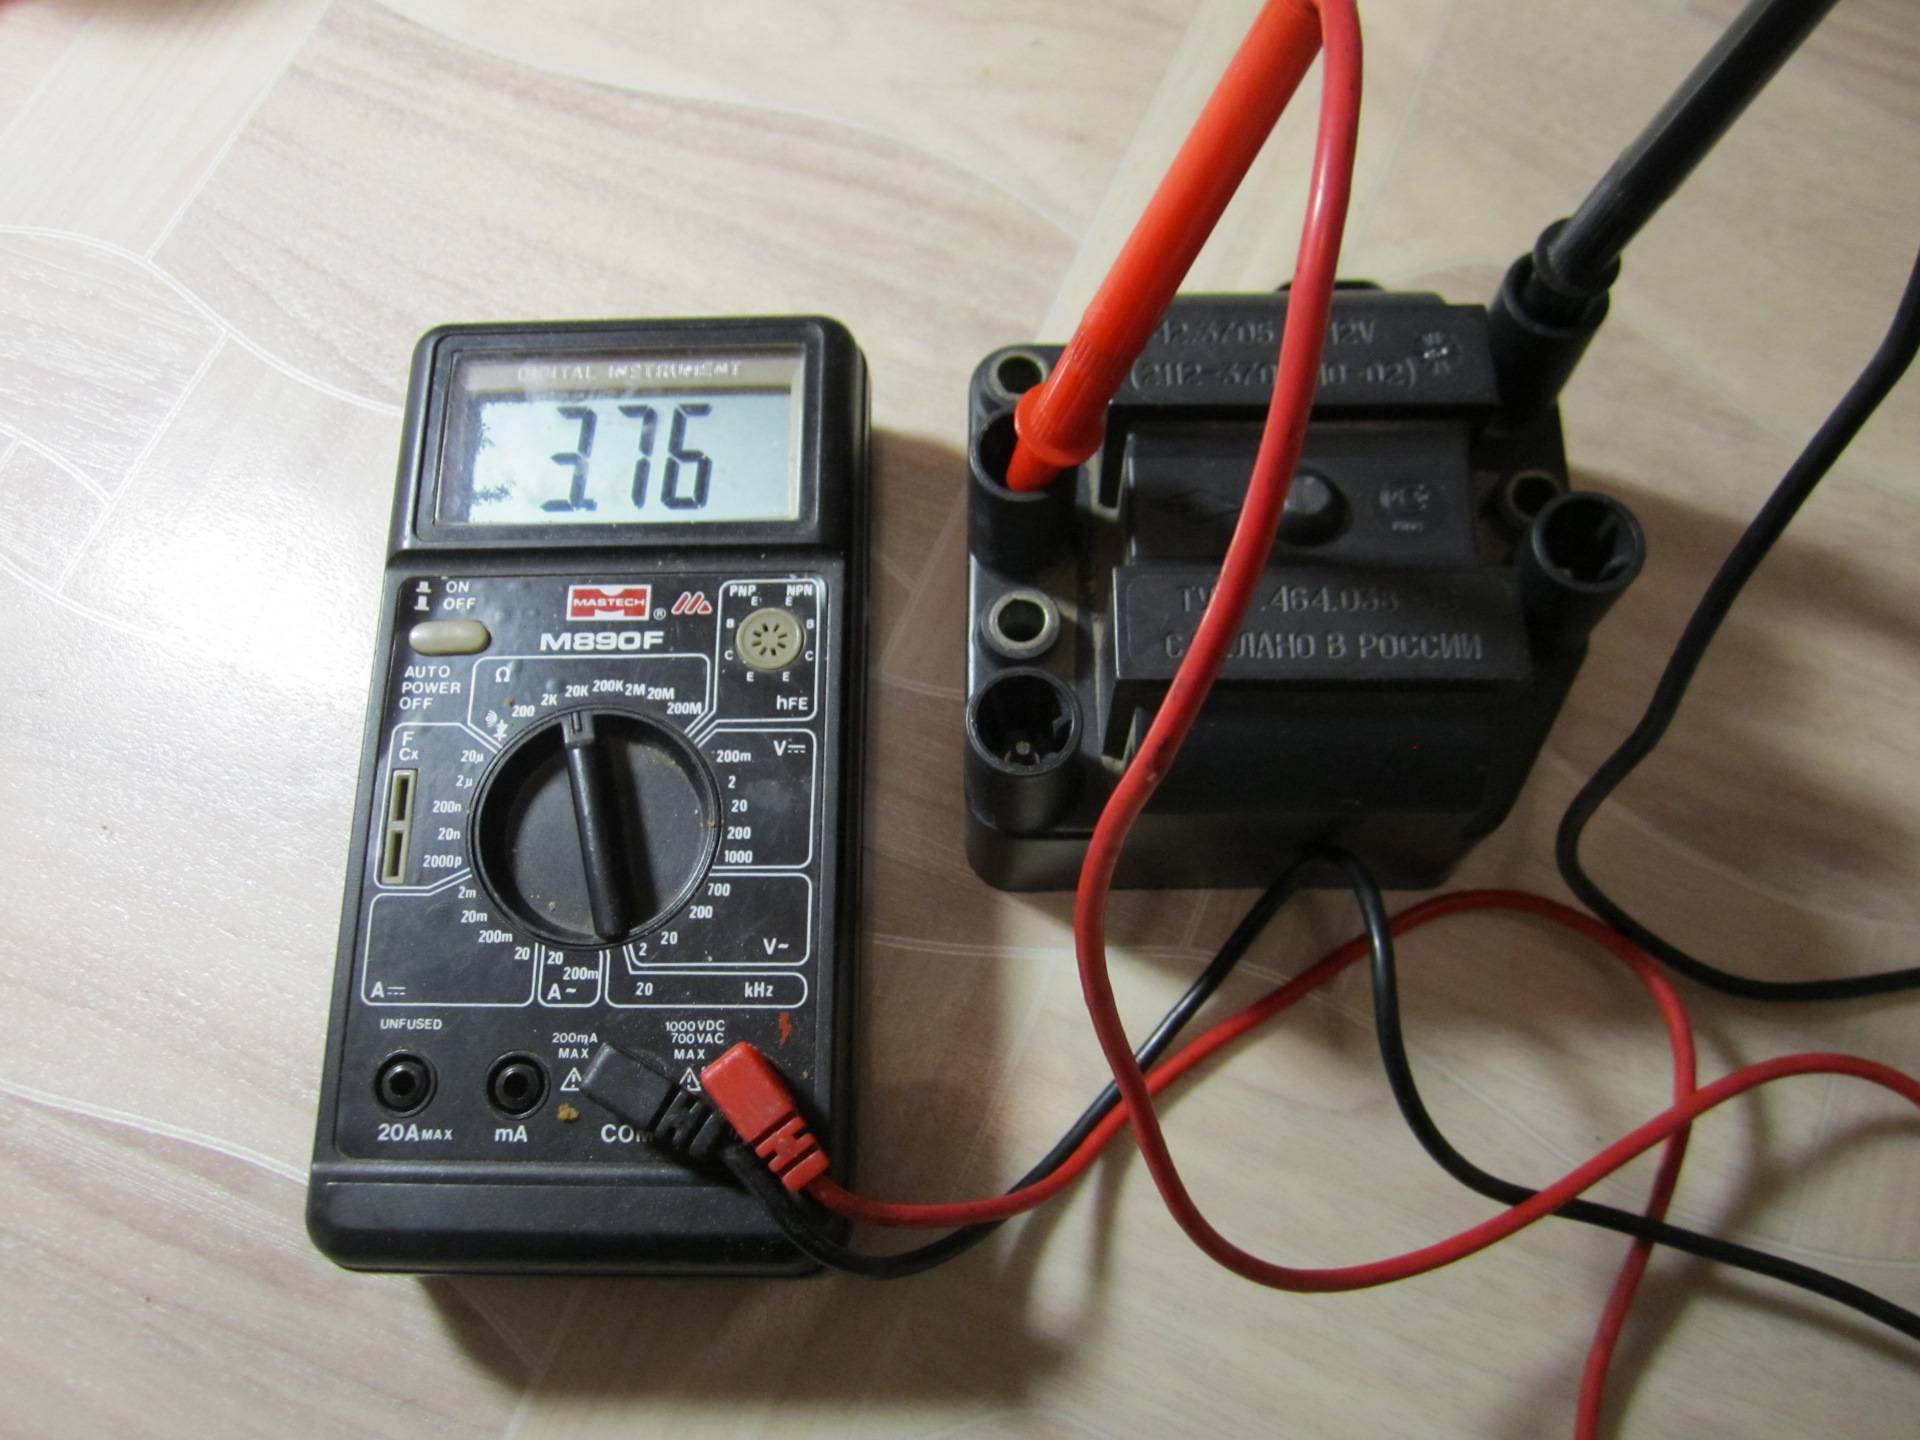 Как проверить модуль зажигания ваз-2114 тестером или мультиметром: видеоинструкция